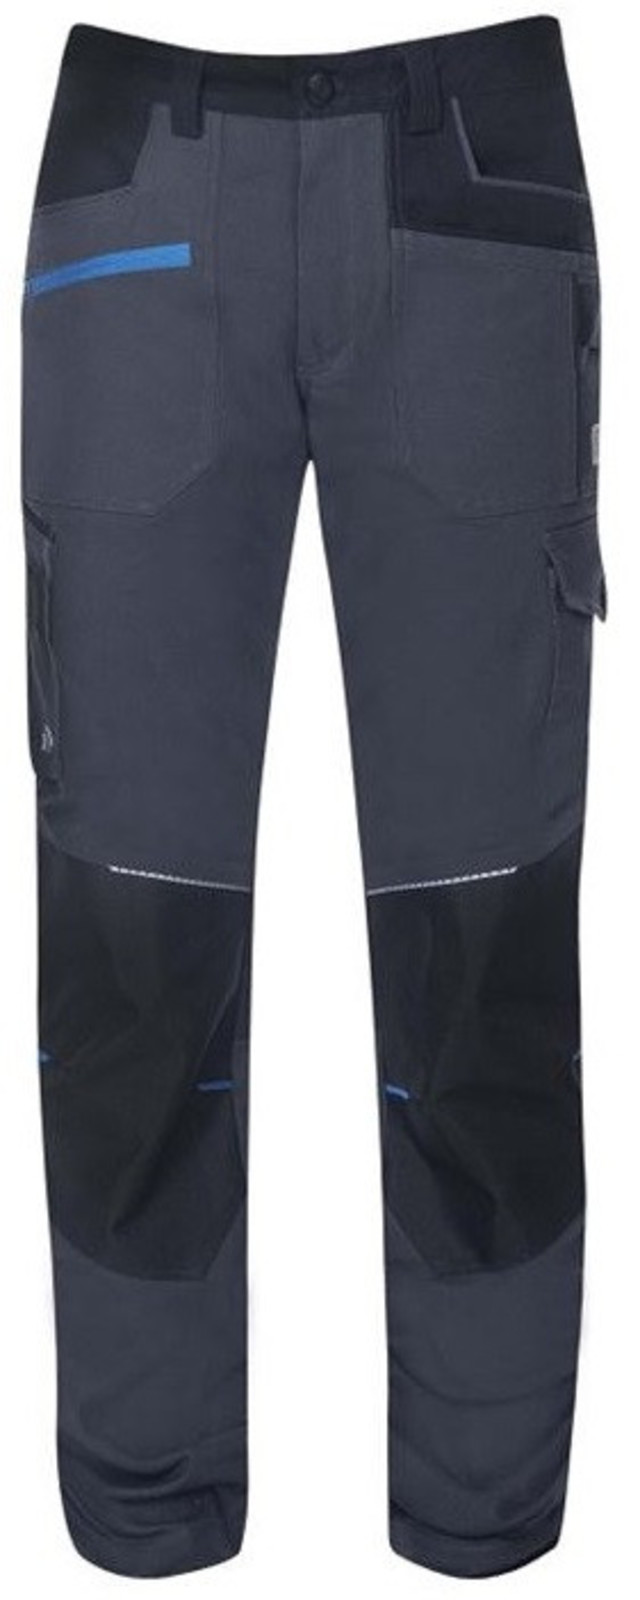 Detské strečové nohavice Ardon 4Xstretch - veľkosť: 110/116, farba: tmavo šedá